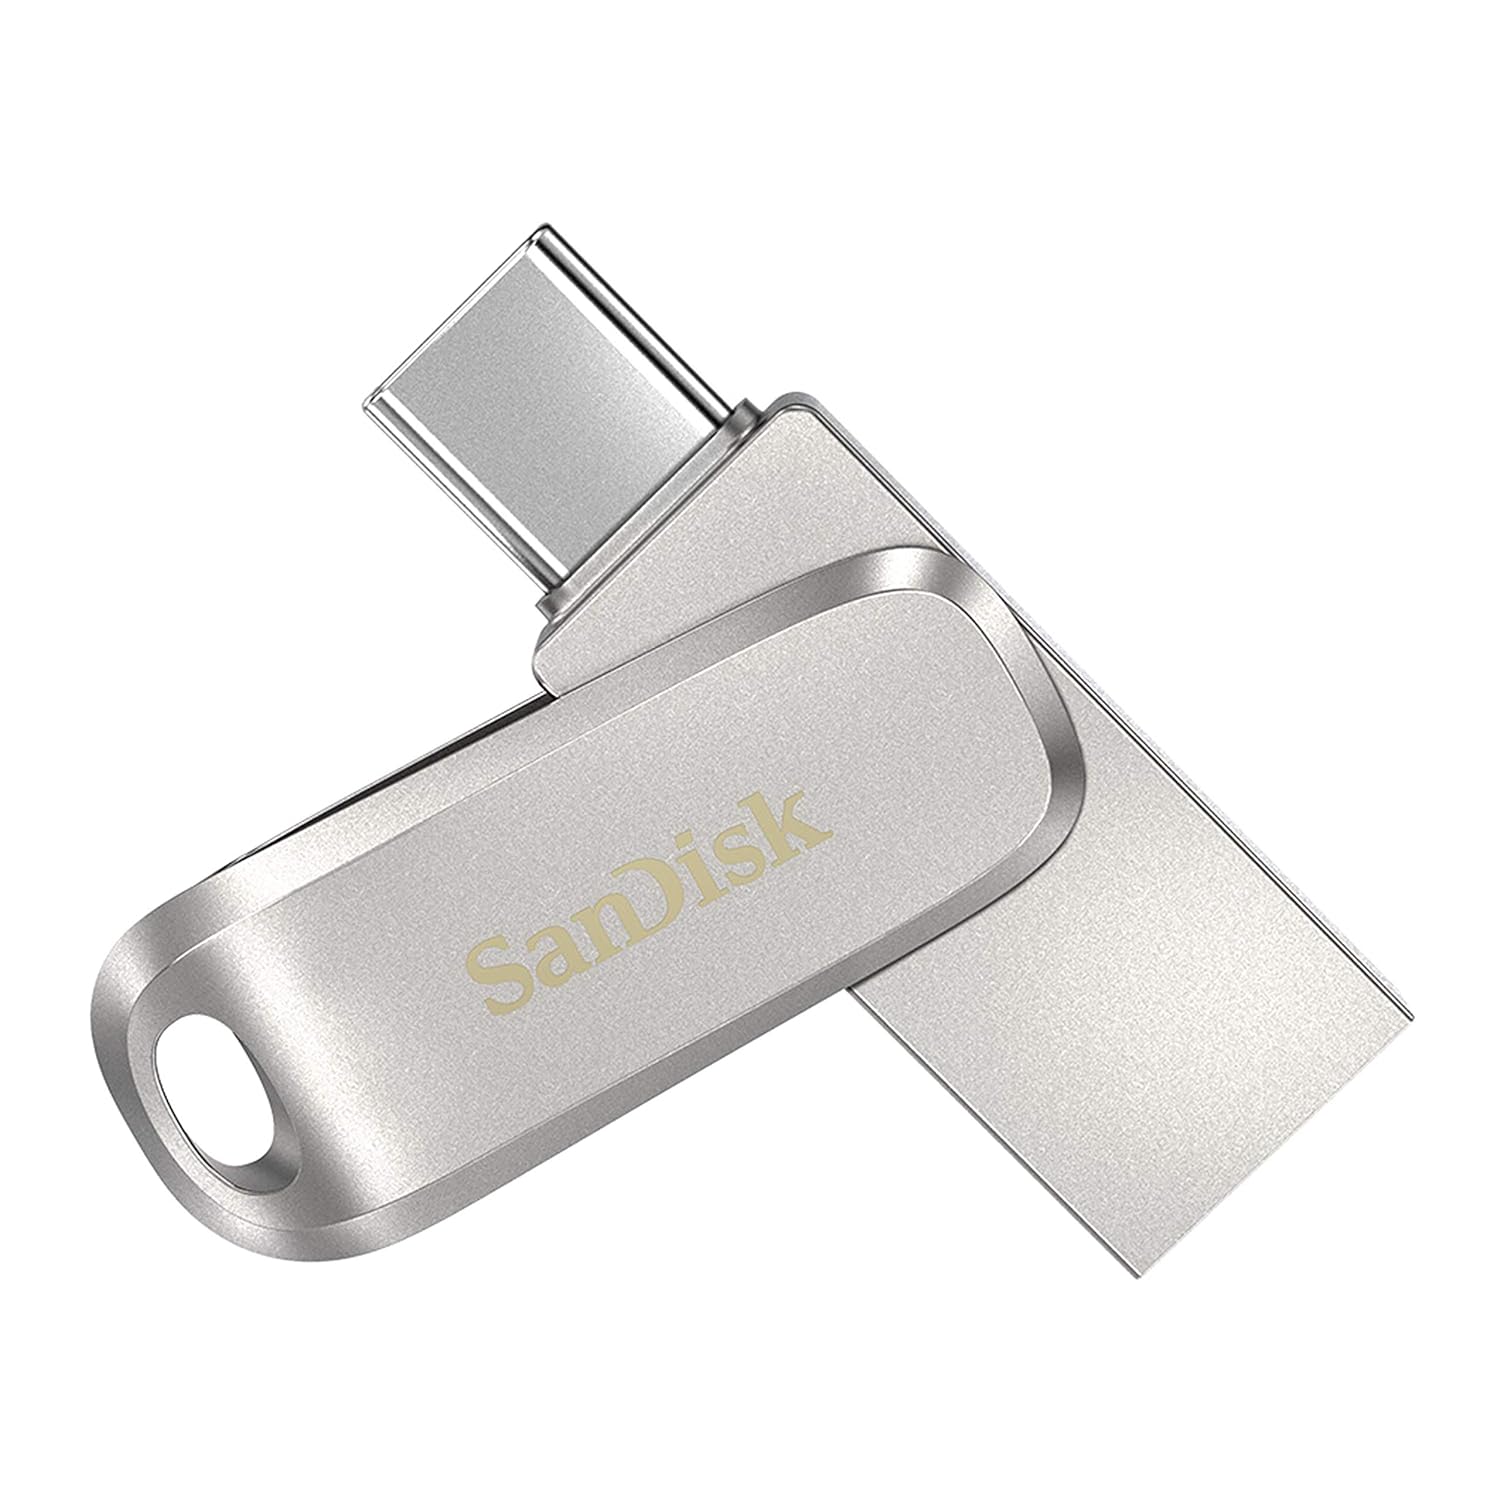 Sandisk Ultra Dual Drive Luxe USB-C OTG USB 3.1 64GB